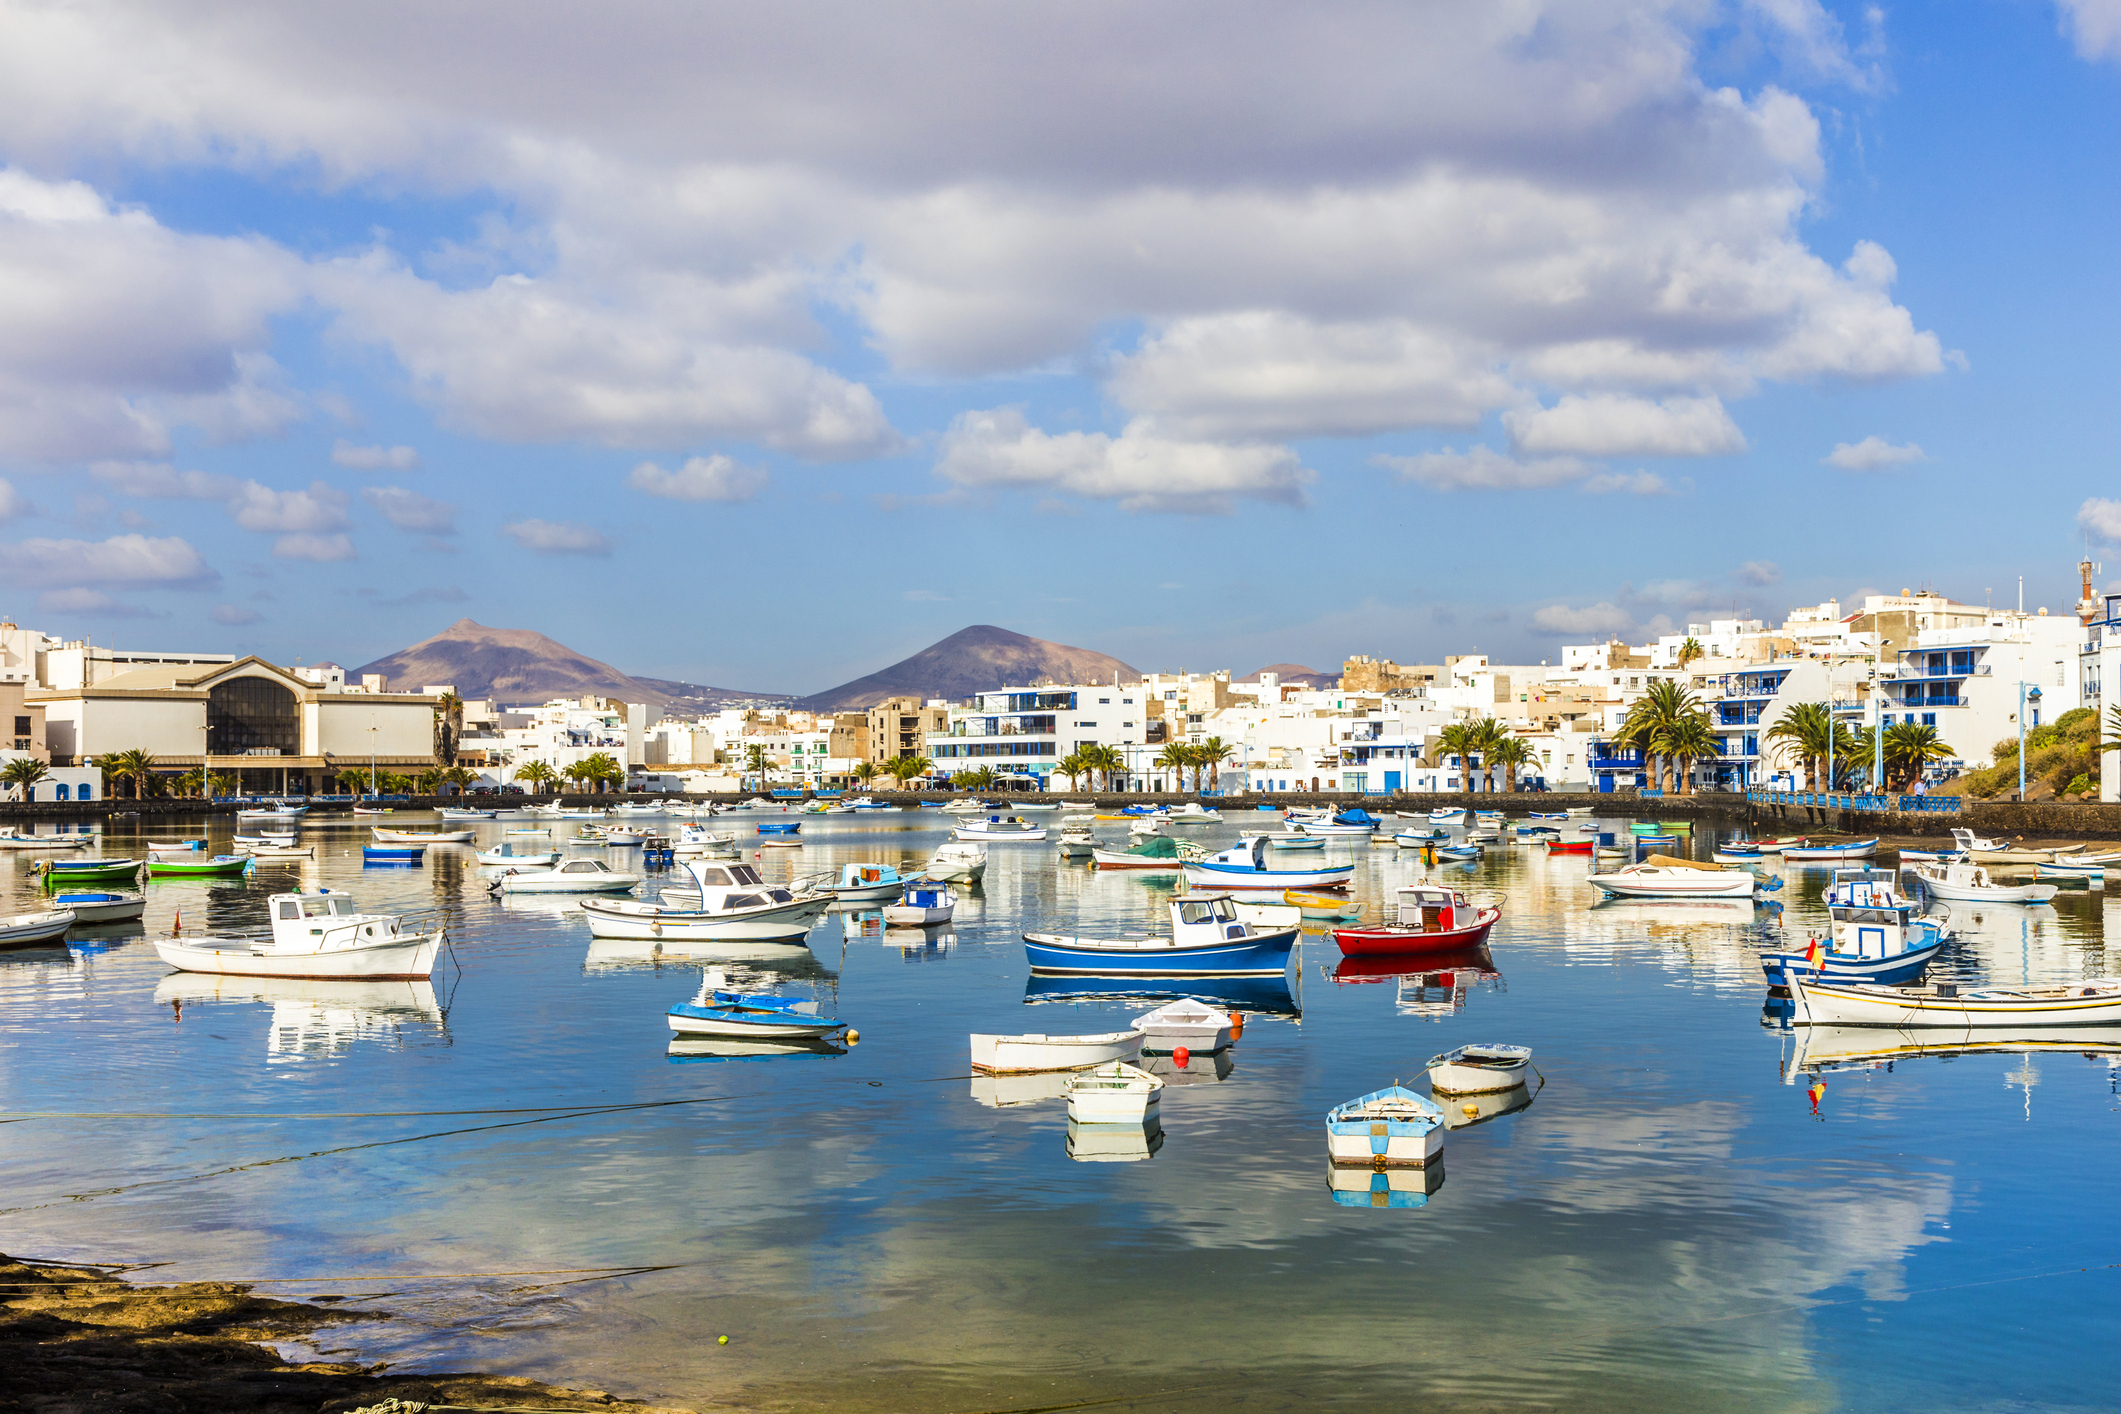 Prenota il tuo noleggio auto a Lanzarote in tutta sicurezza. Cancellazione totale gratuita.